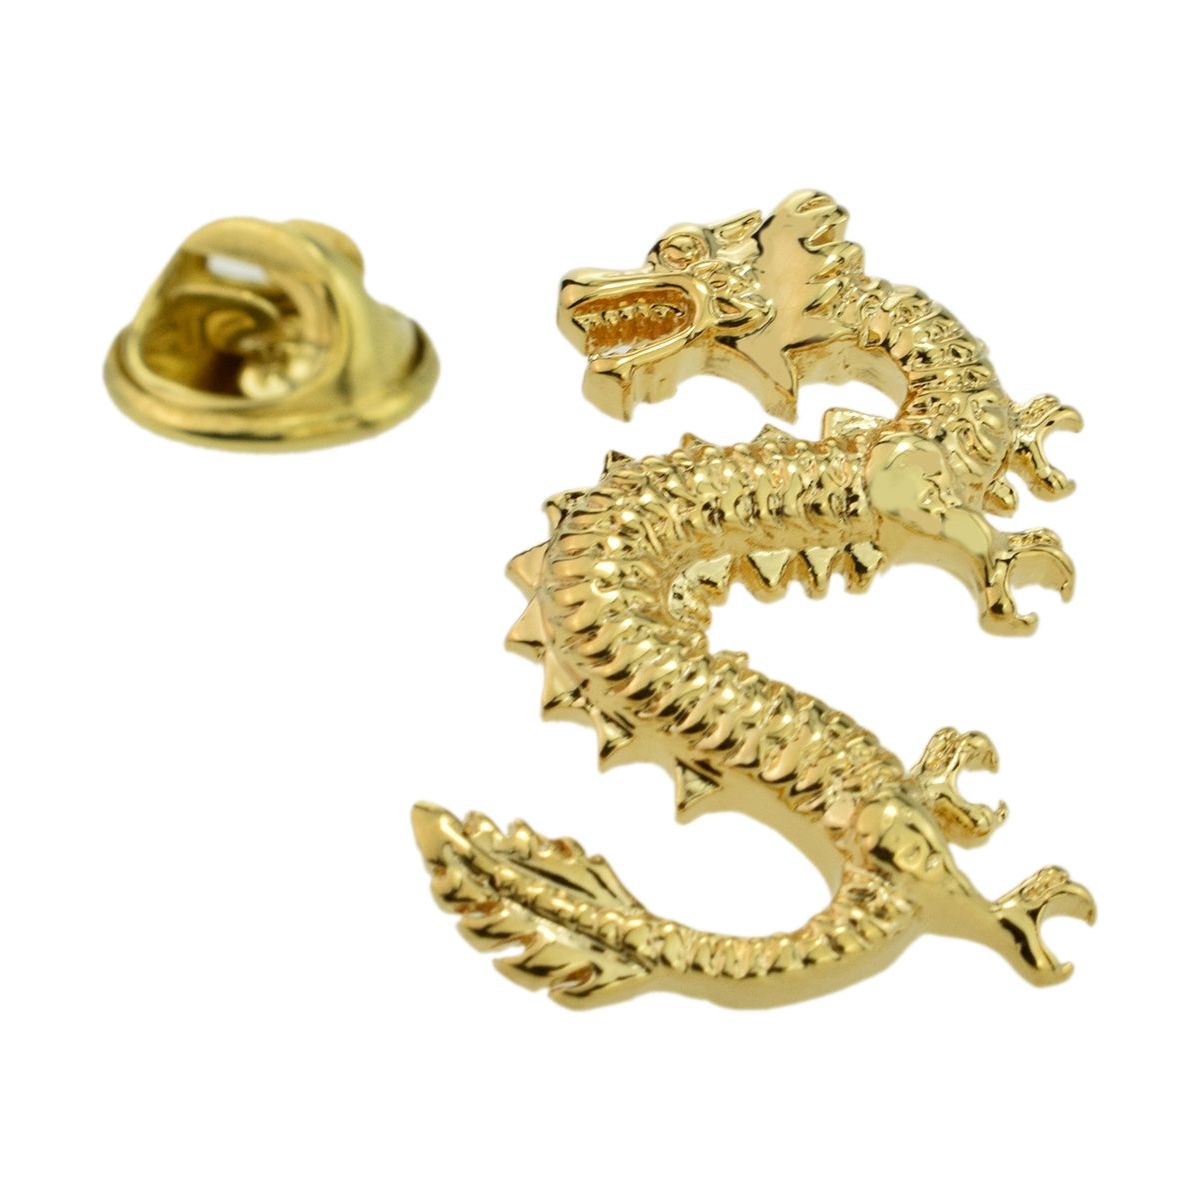 Golden Lucky Dragon Lapel Pin Badge - Ashton and Finch